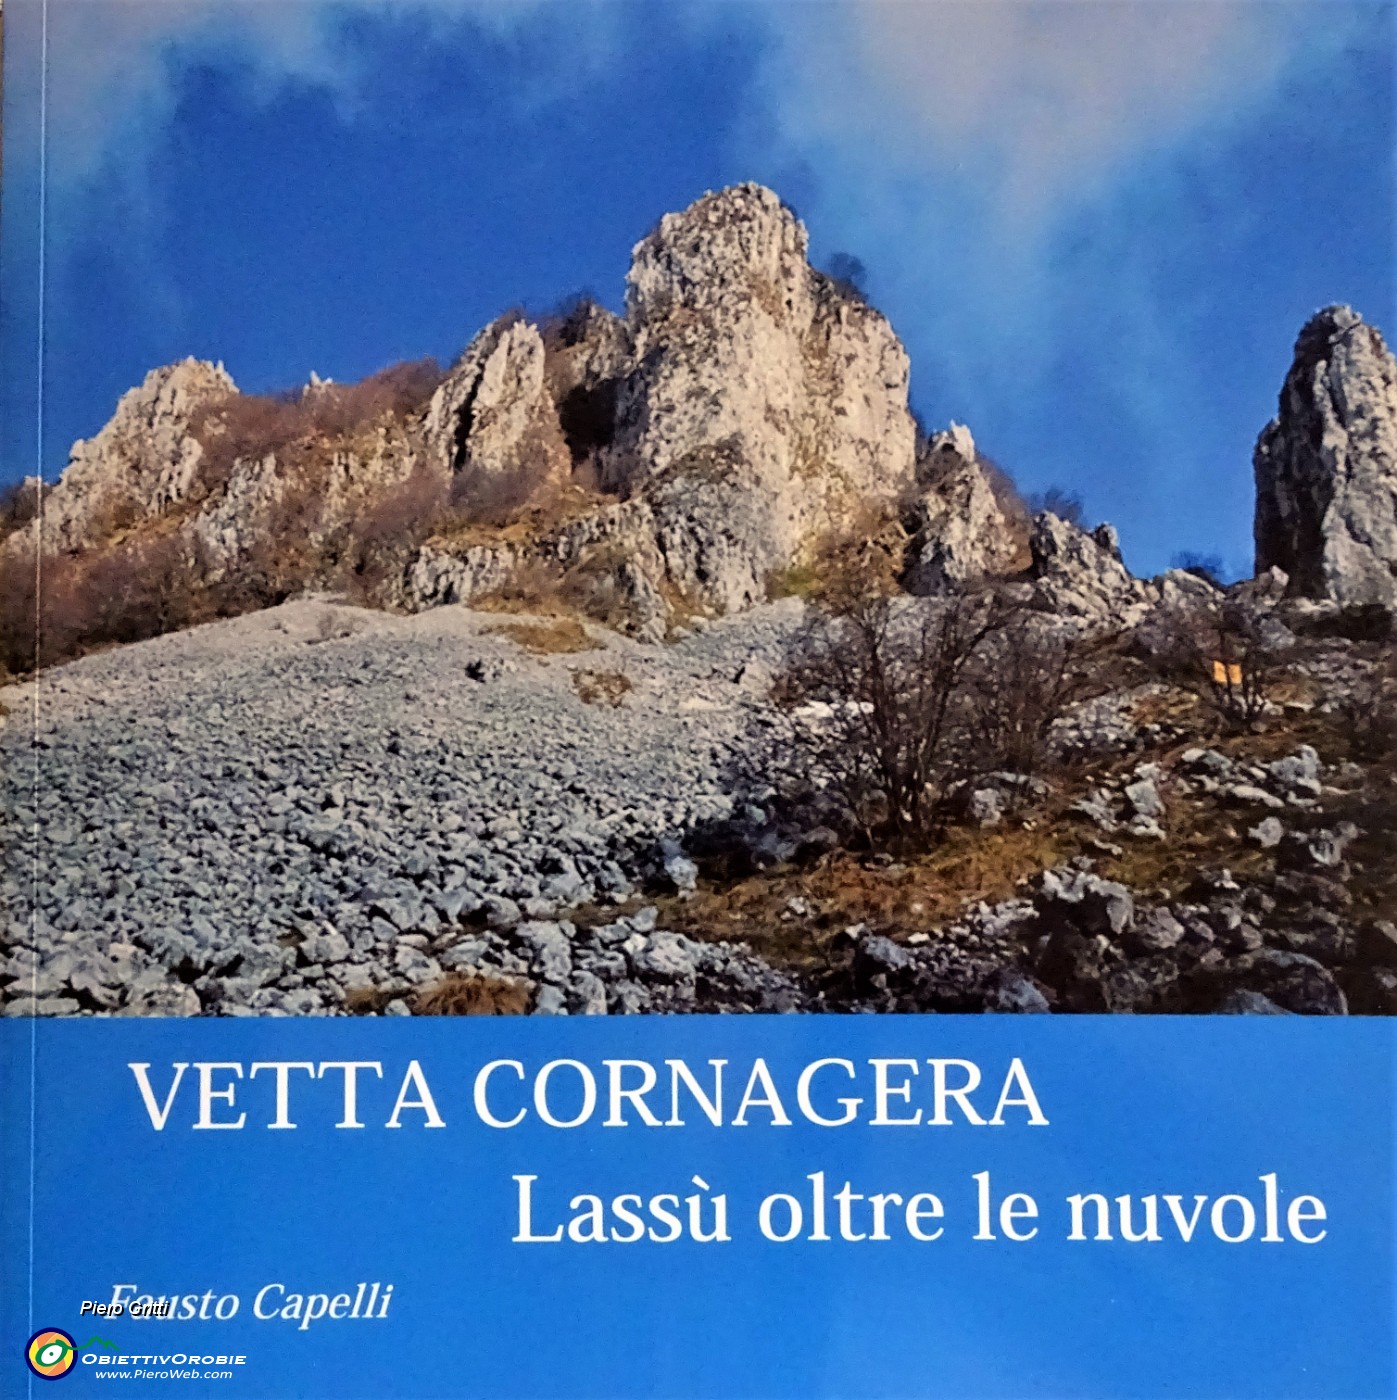 05 Il nuovo libretto di Fausto Capelli 'Vetta Cornagera'.JPG -                                